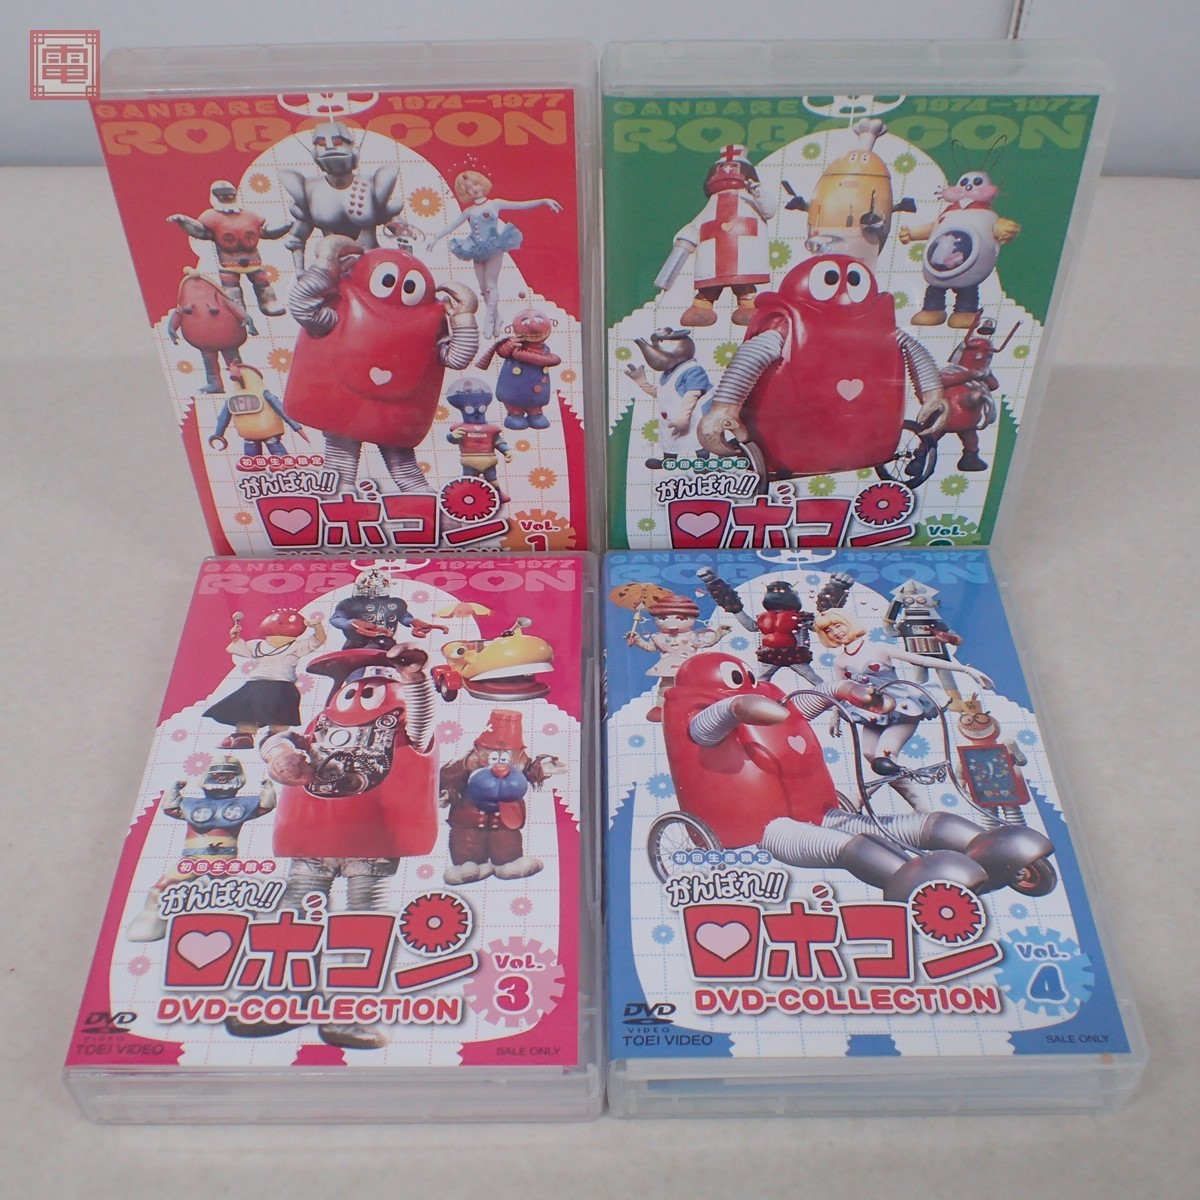 がんばれ!!ロボコン DVD-COLLECTION 全5巻の内 VOL.1～4 4巻セット